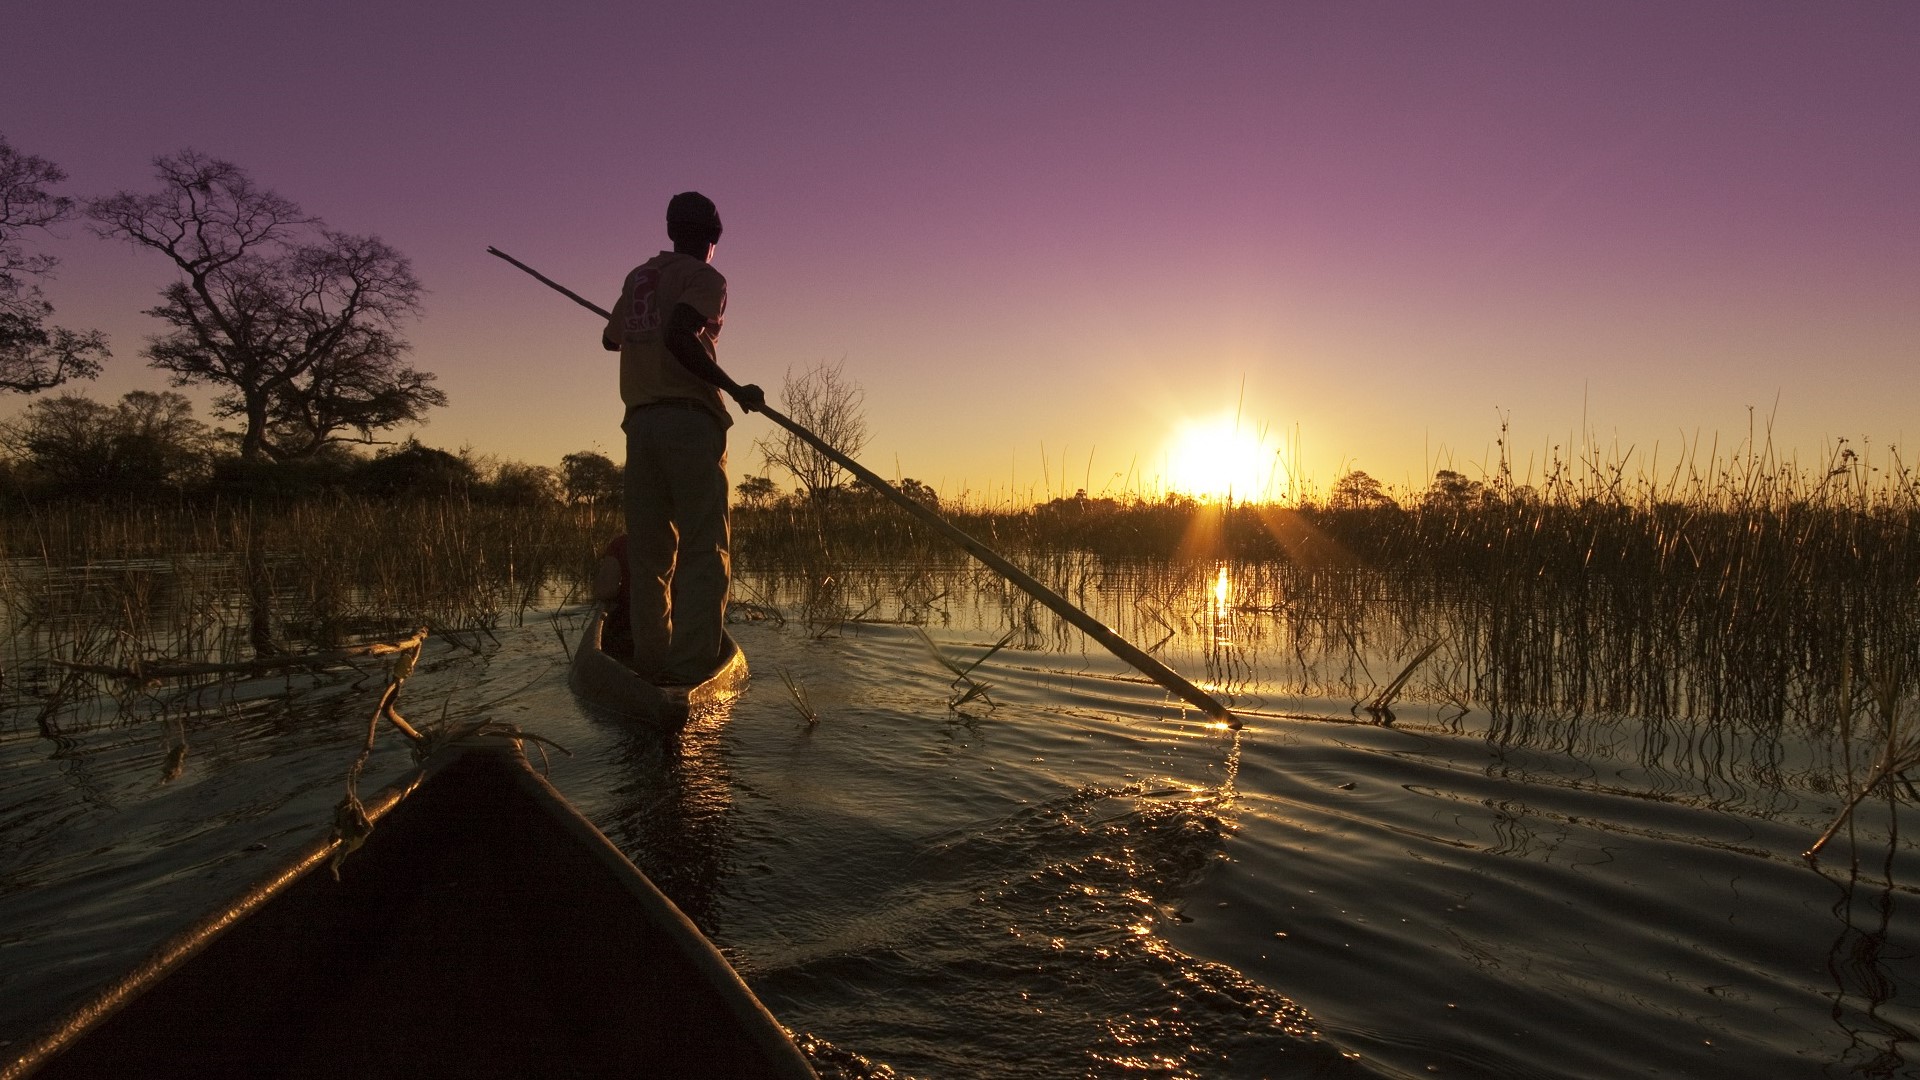 African safari on a mokoro canoe boat in Botswana's Okavango delta at sunset